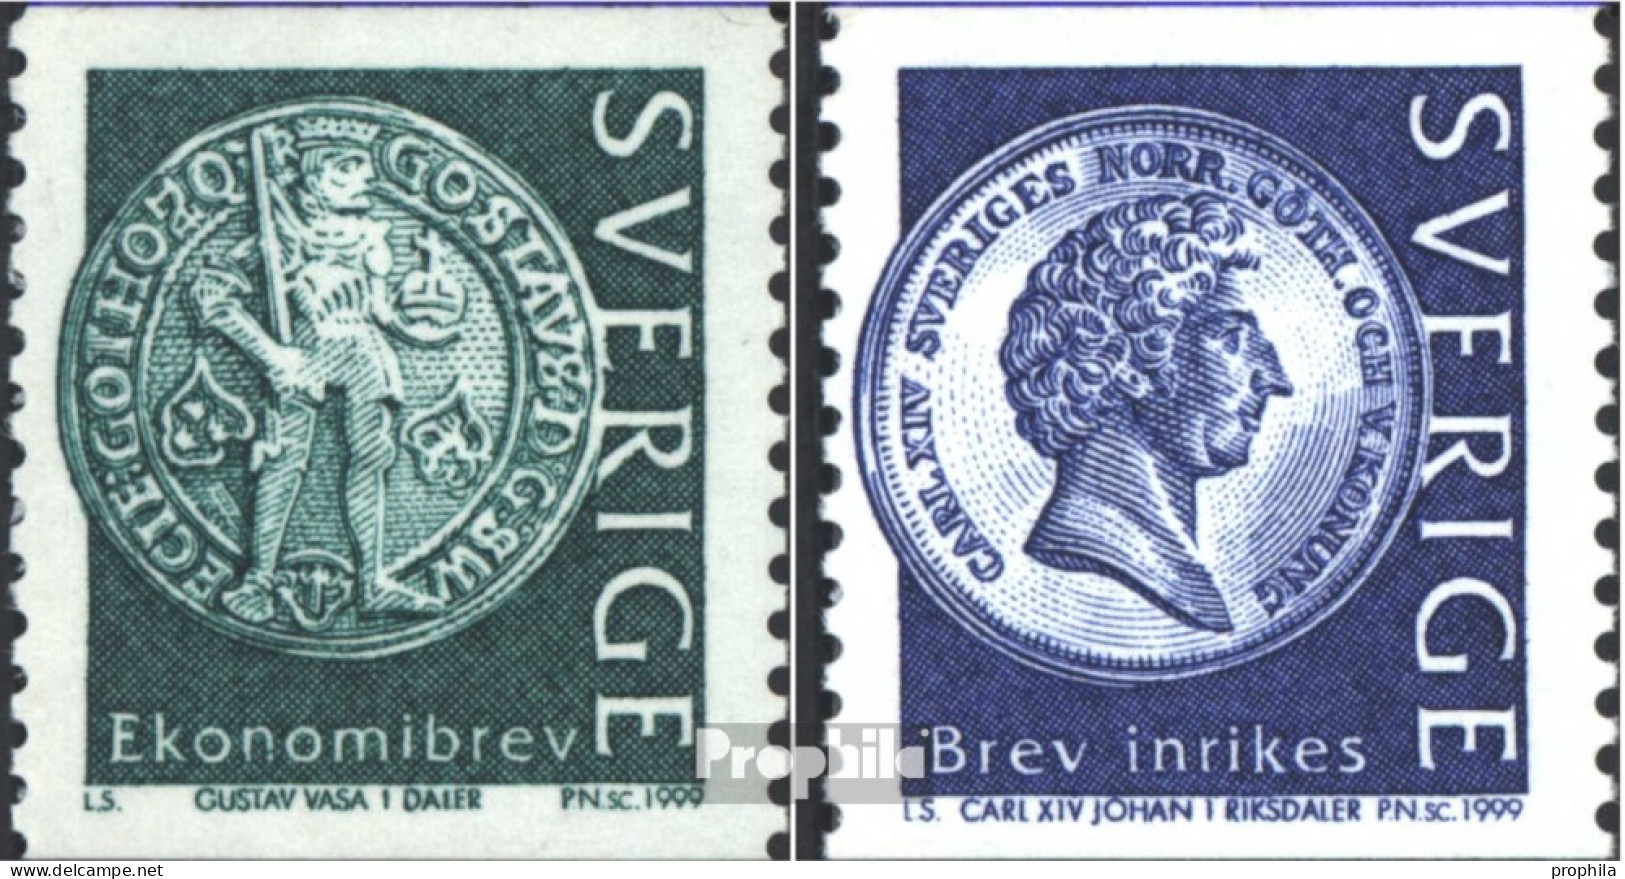 Schweden 2093-2094 (kompl.Ausg.) Postfrisch 1999 Münzen - Ungebraucht